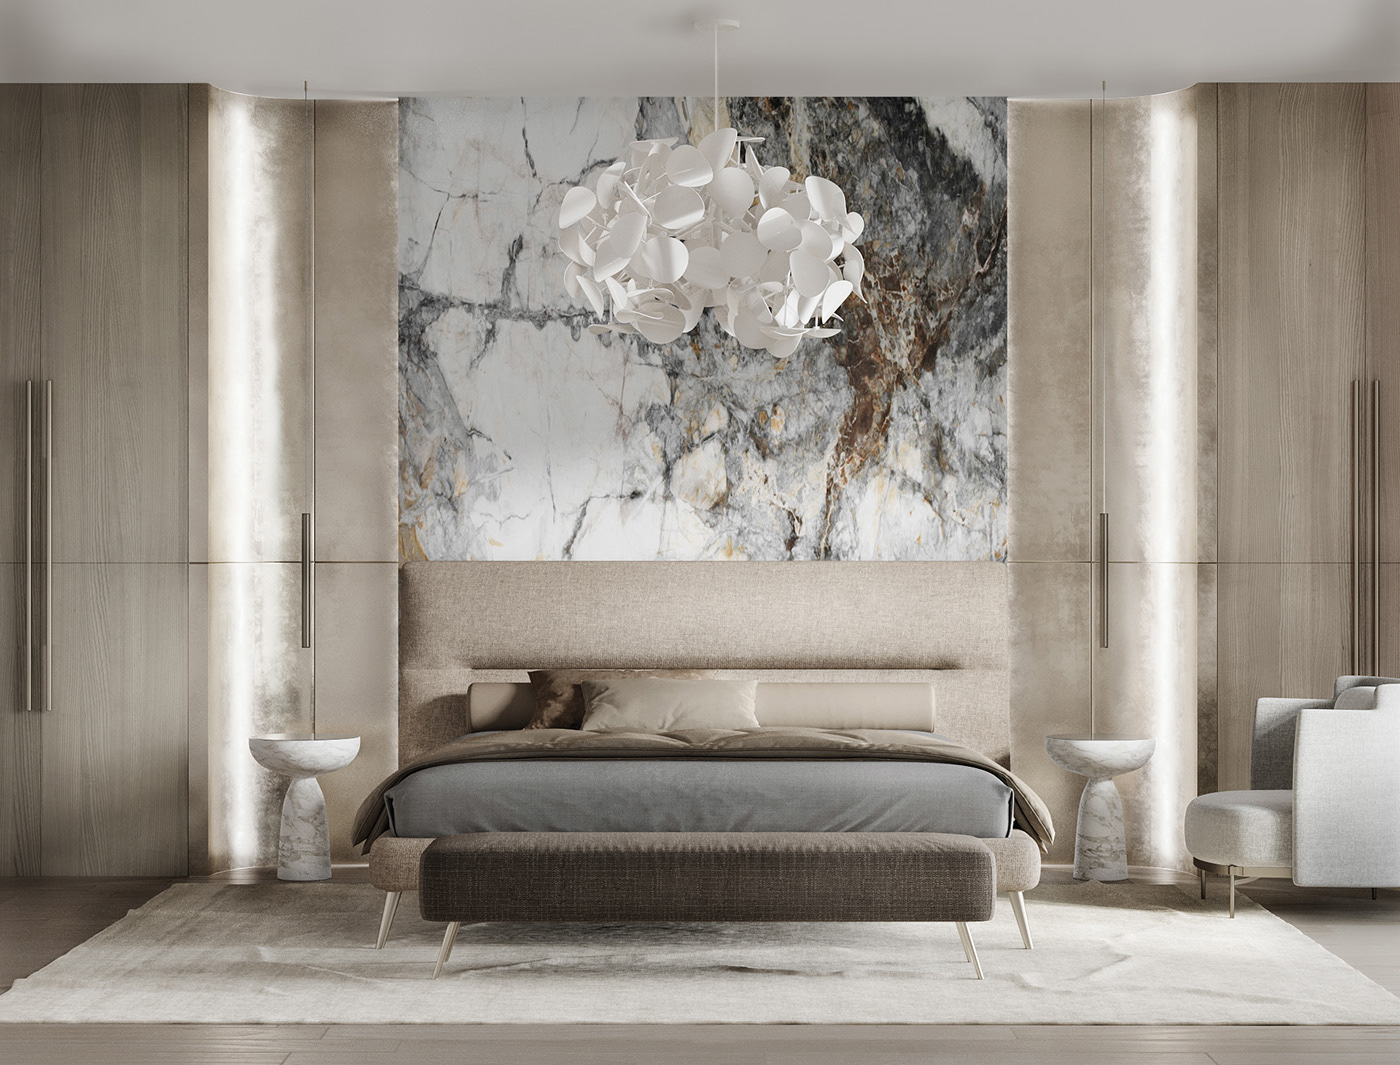 3dmax 3ds max architecture bedroom corona render  Interior interior design  Interior Visualization